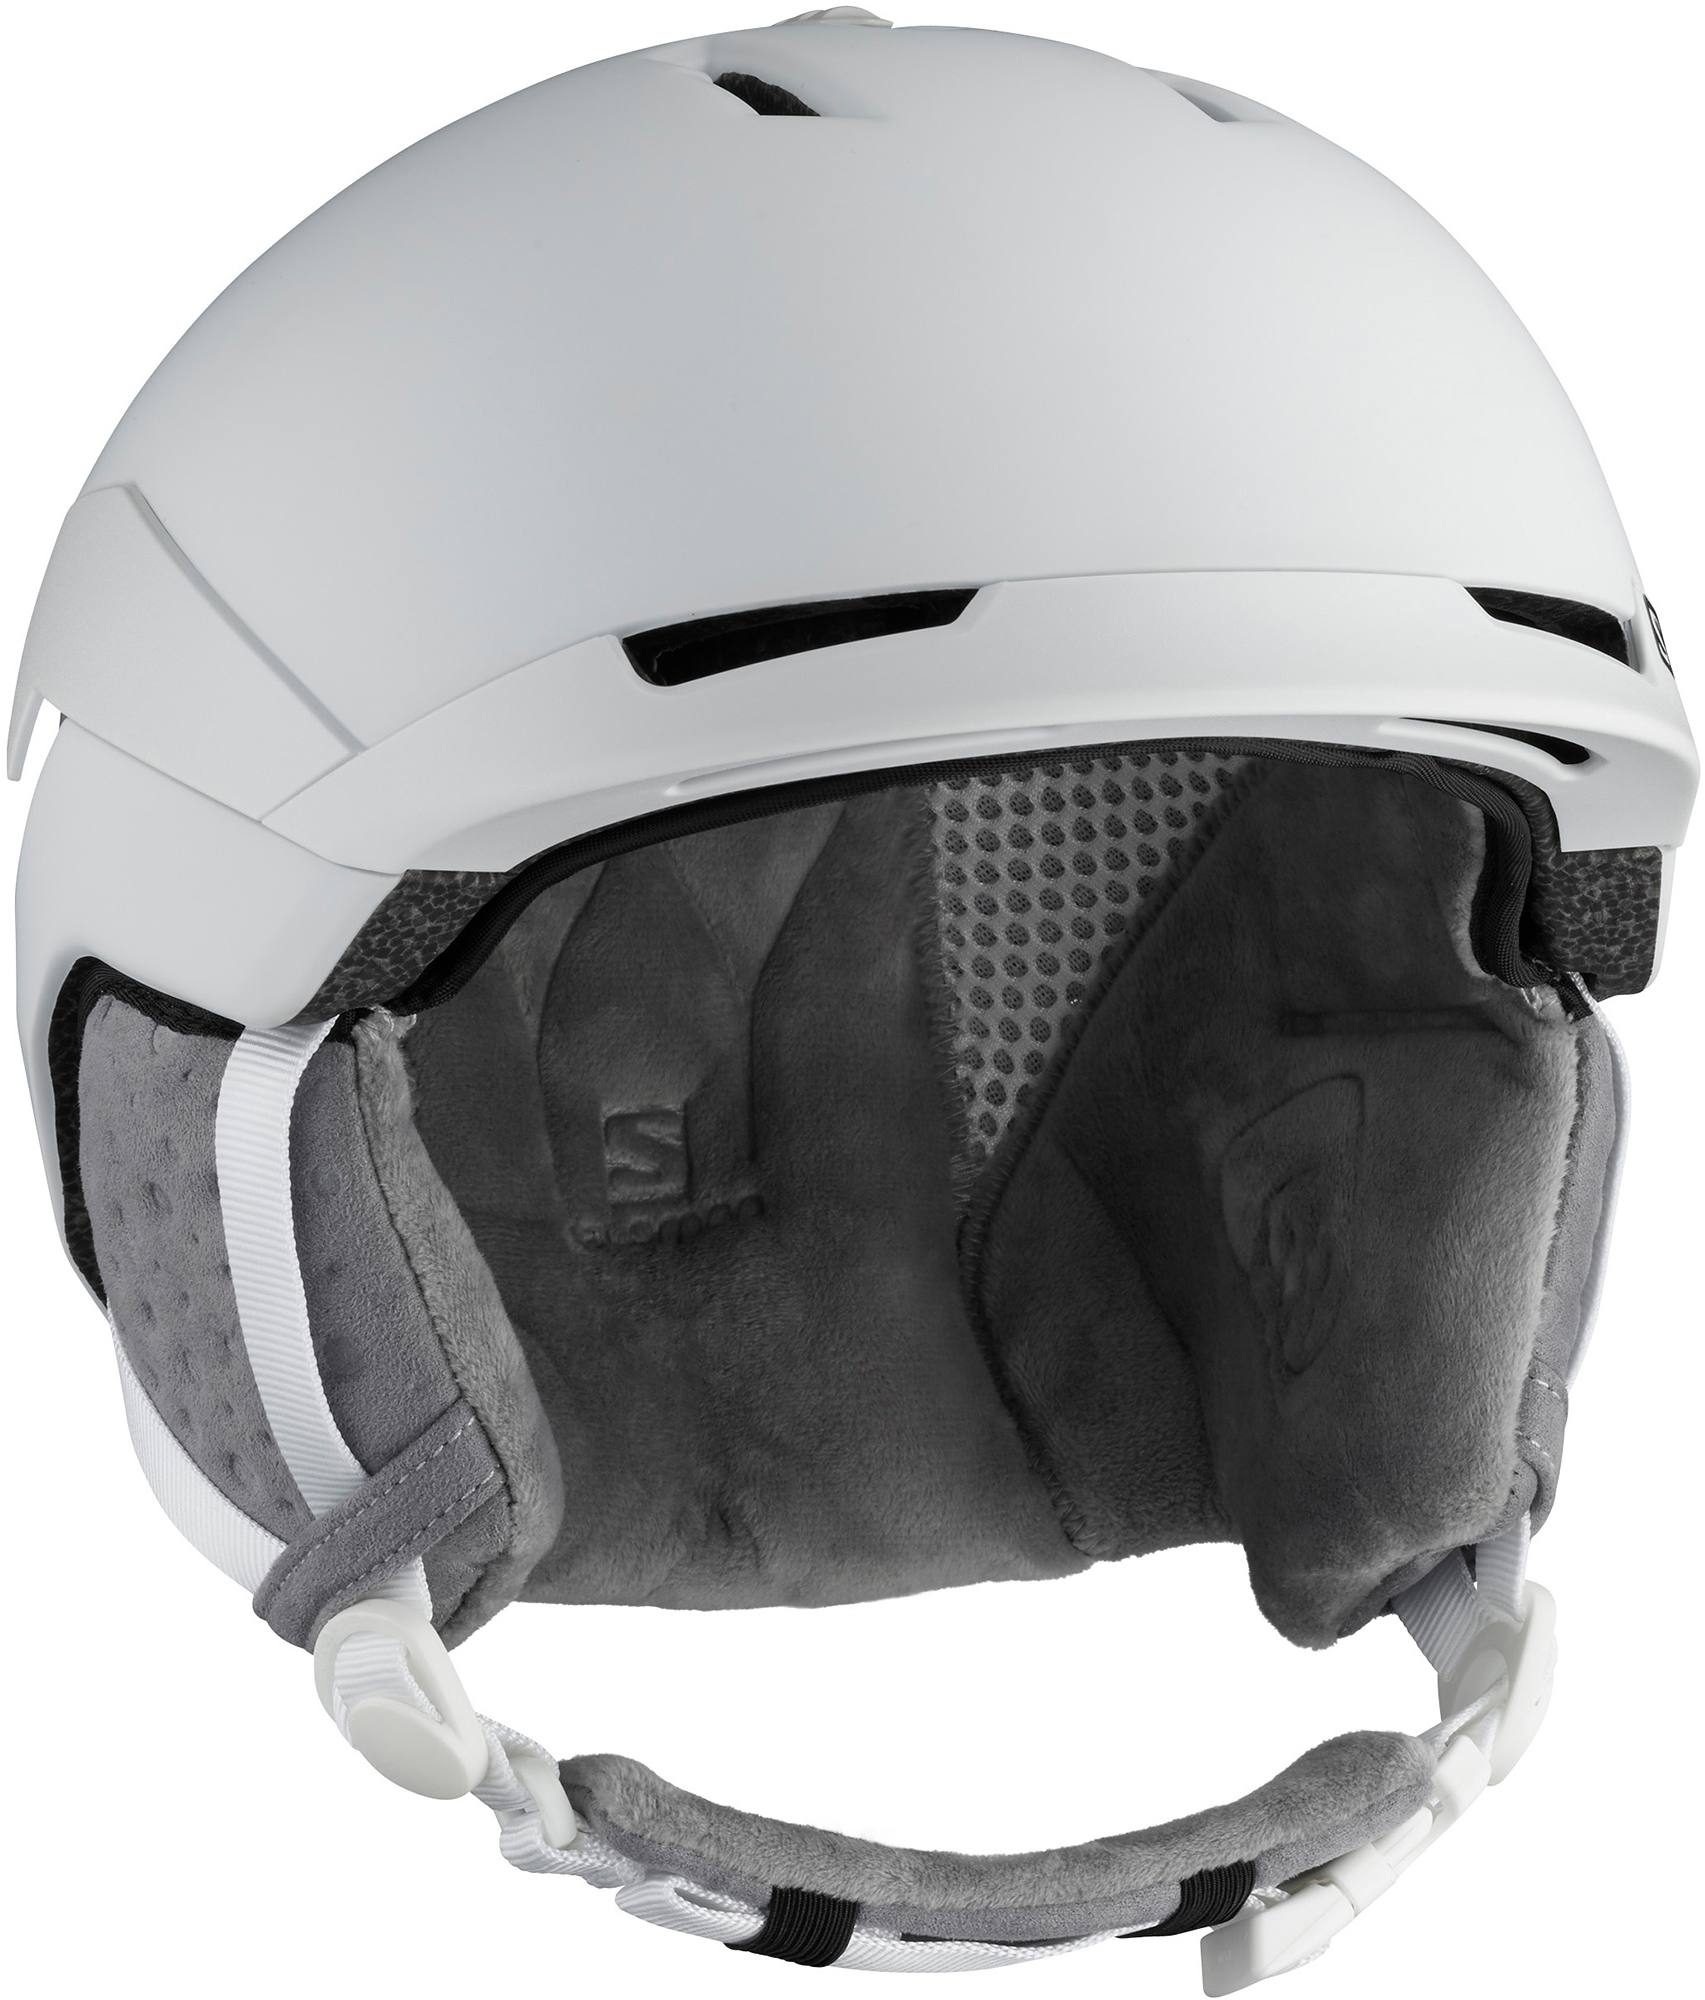 Quest Access Women’s Helmet 18/19 White S (53 – 56 cm)